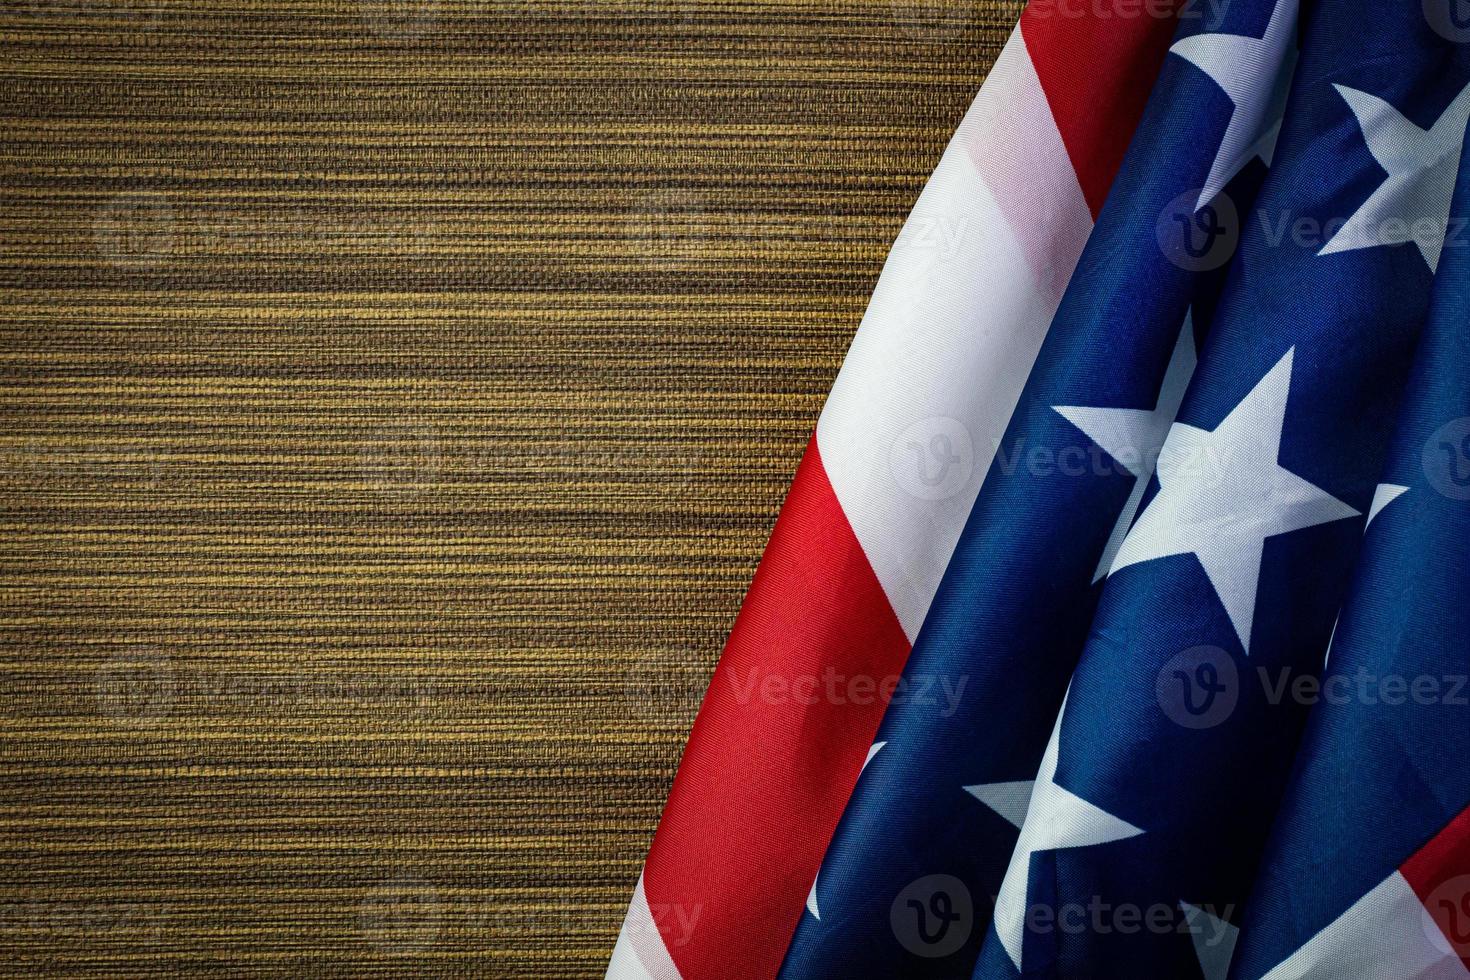 amerikanische flagge auf dem inhalt des holzunabhängigkeitstages. foto